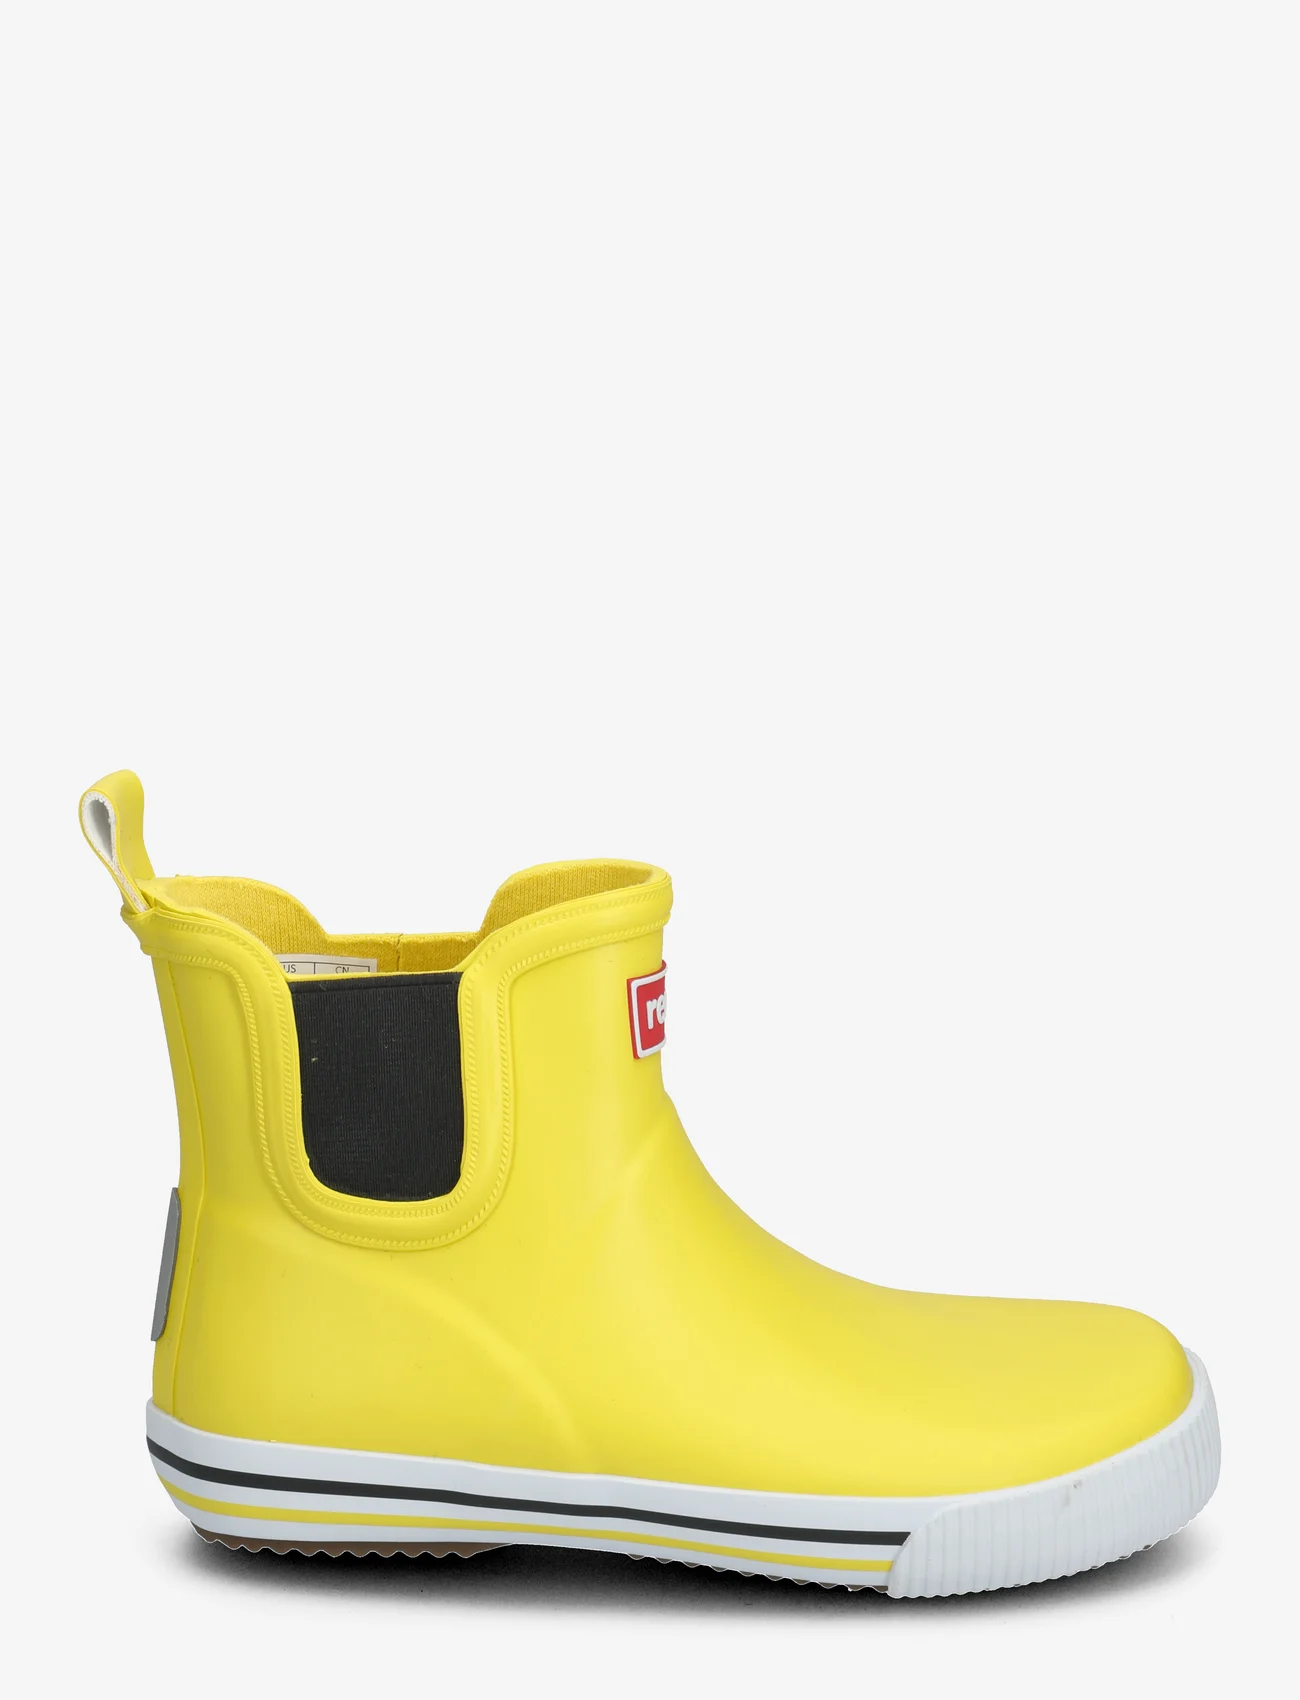 Reima - Rain boots, Ankles - vuorittomat kumisaappaat - yellow - 1